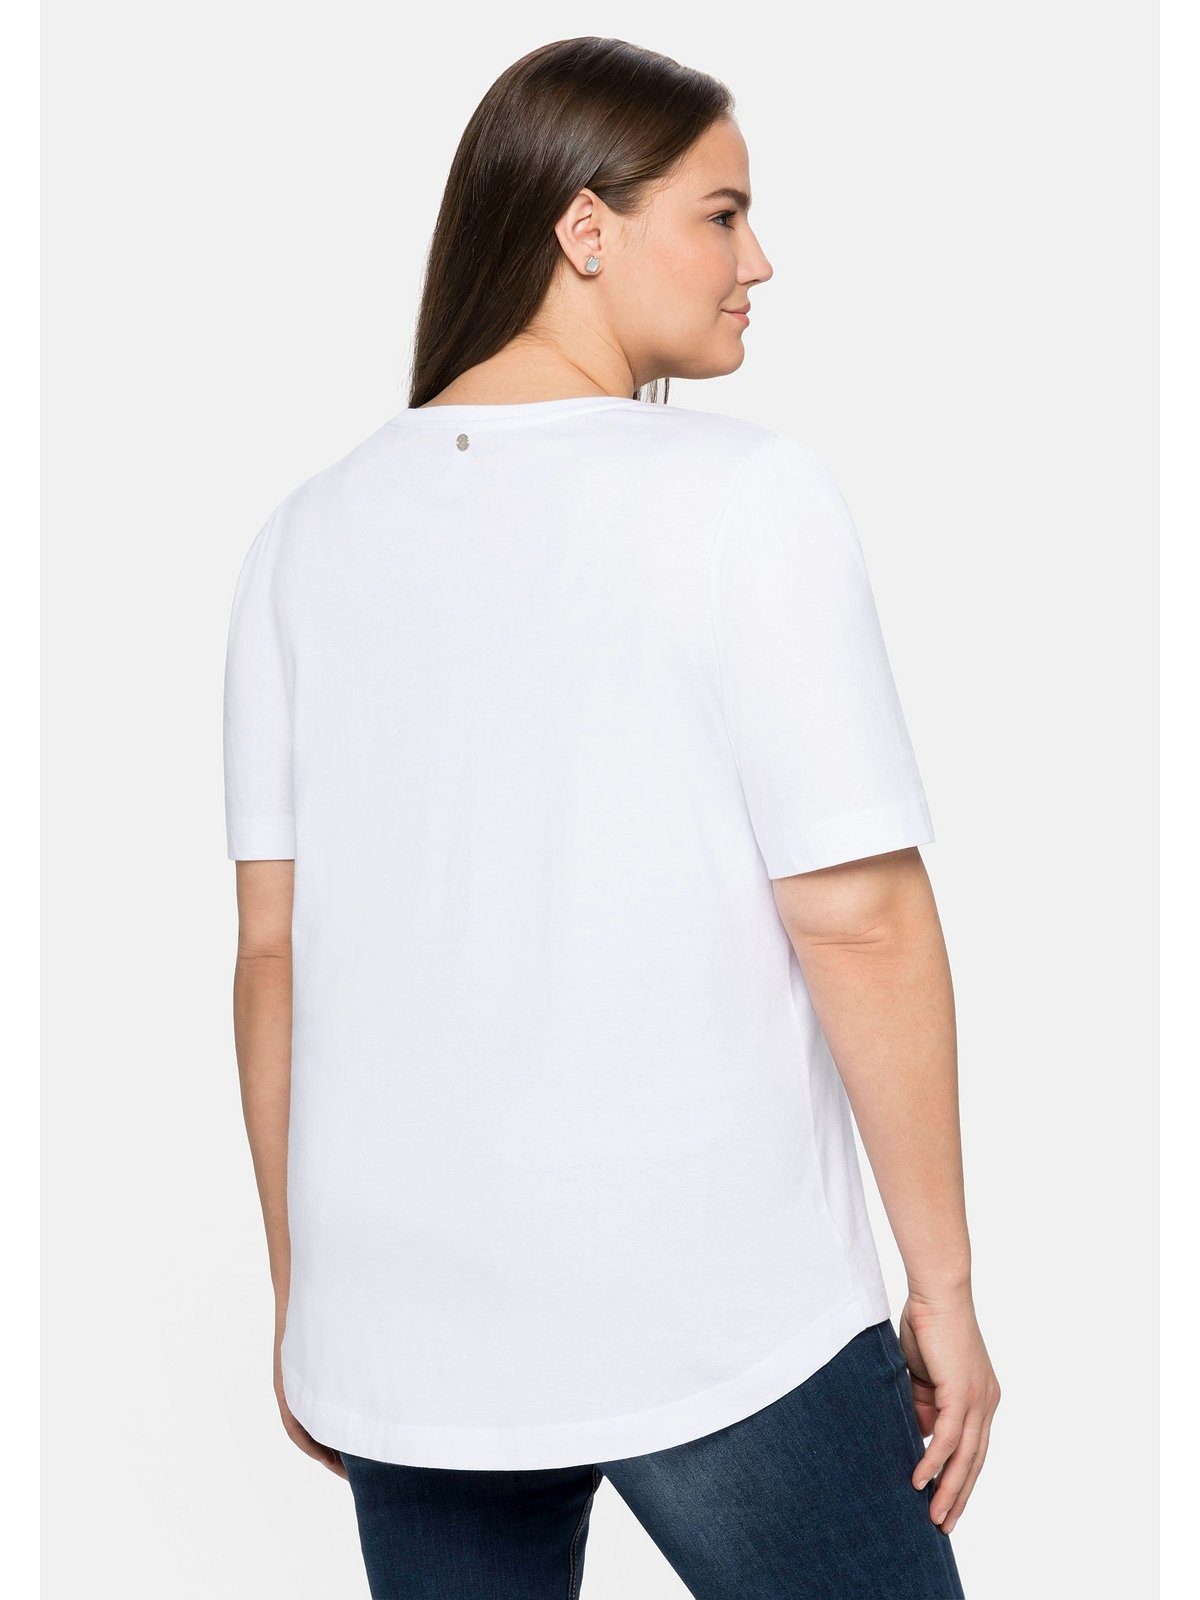 Sheego T-Shirt Frontdruck aus Große weiß Größen mit Baumwolle